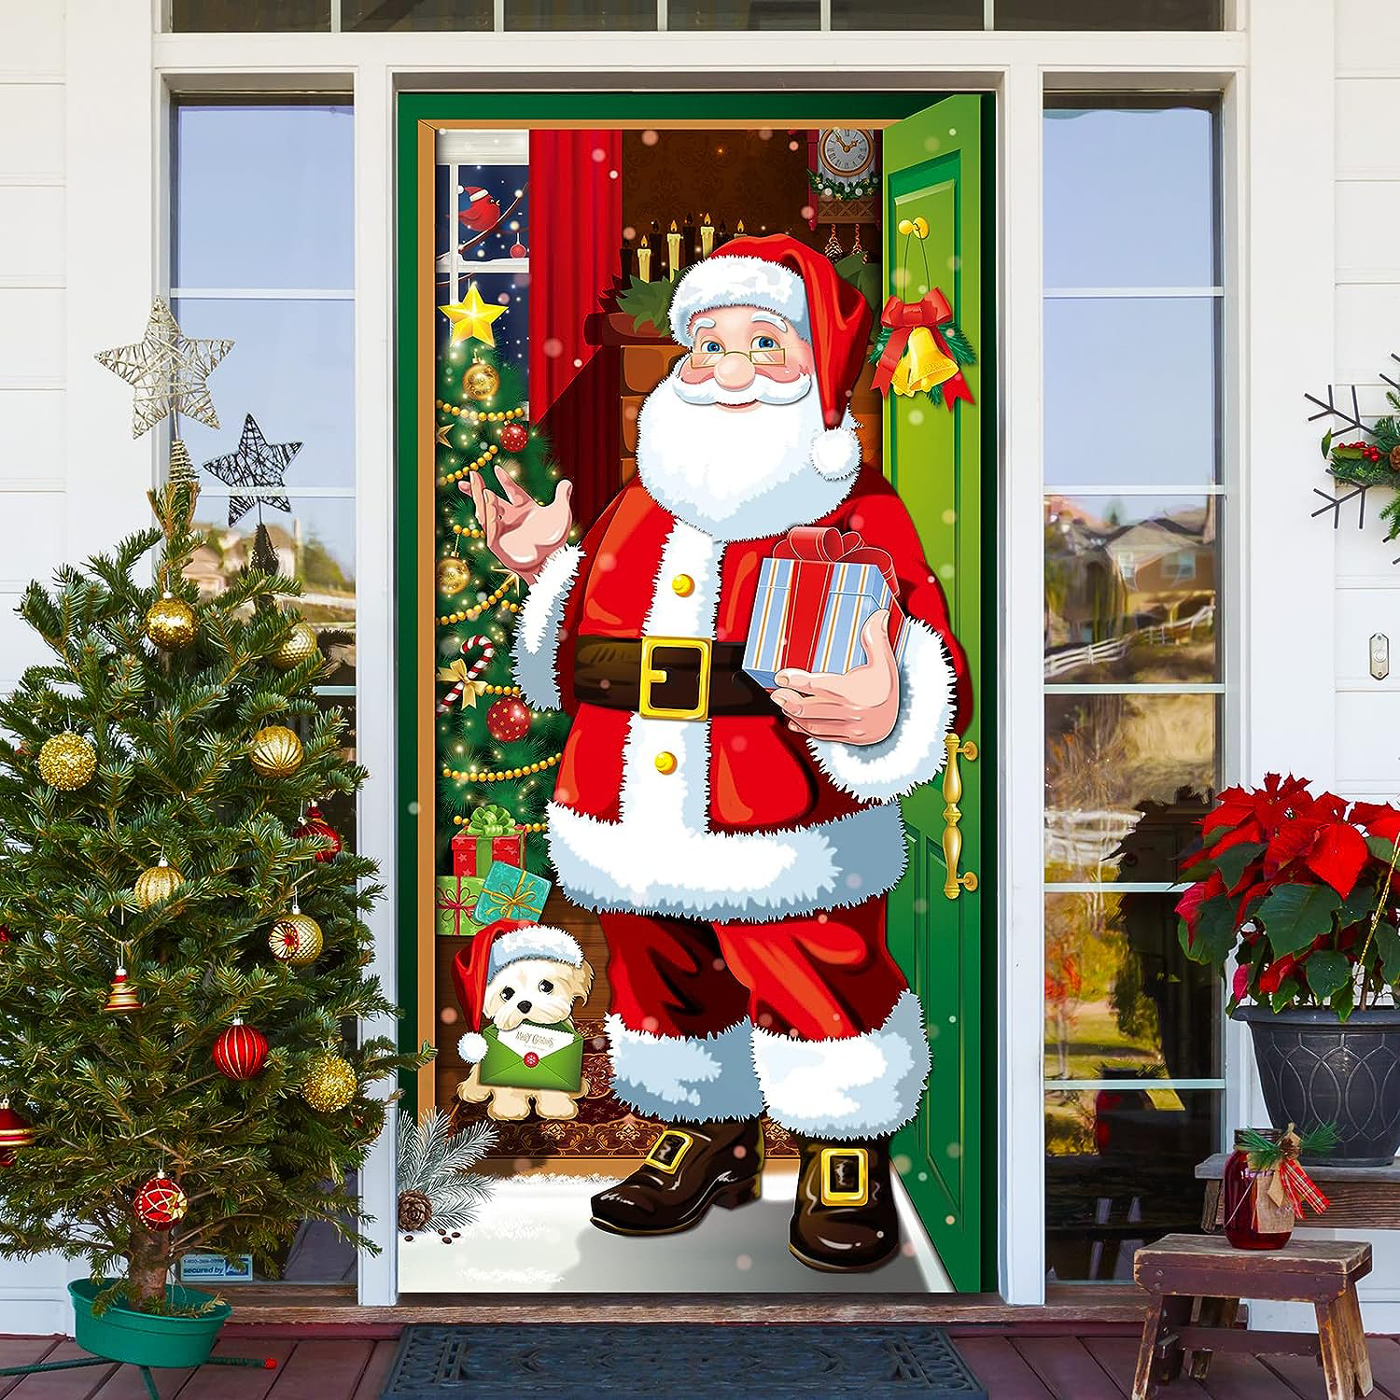 Santa Claus In The Front Door Front Door Wrap Cover Home Decoration